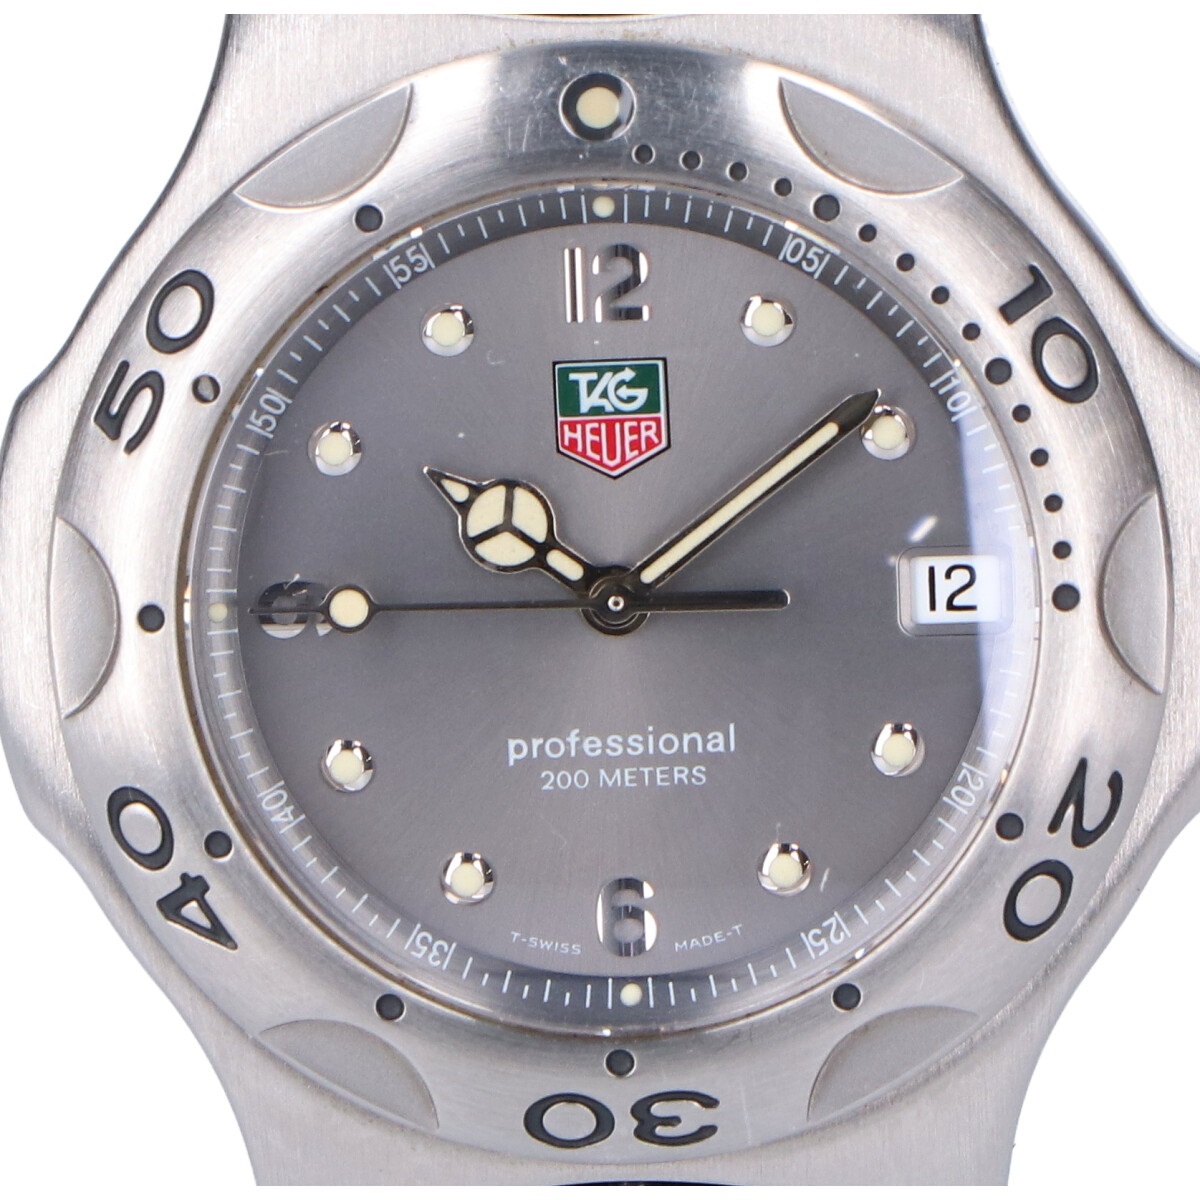 タグ・ホイヤーのWL1111 キリウム SSケース デイト クオーツ 腕時計の買取実績です。